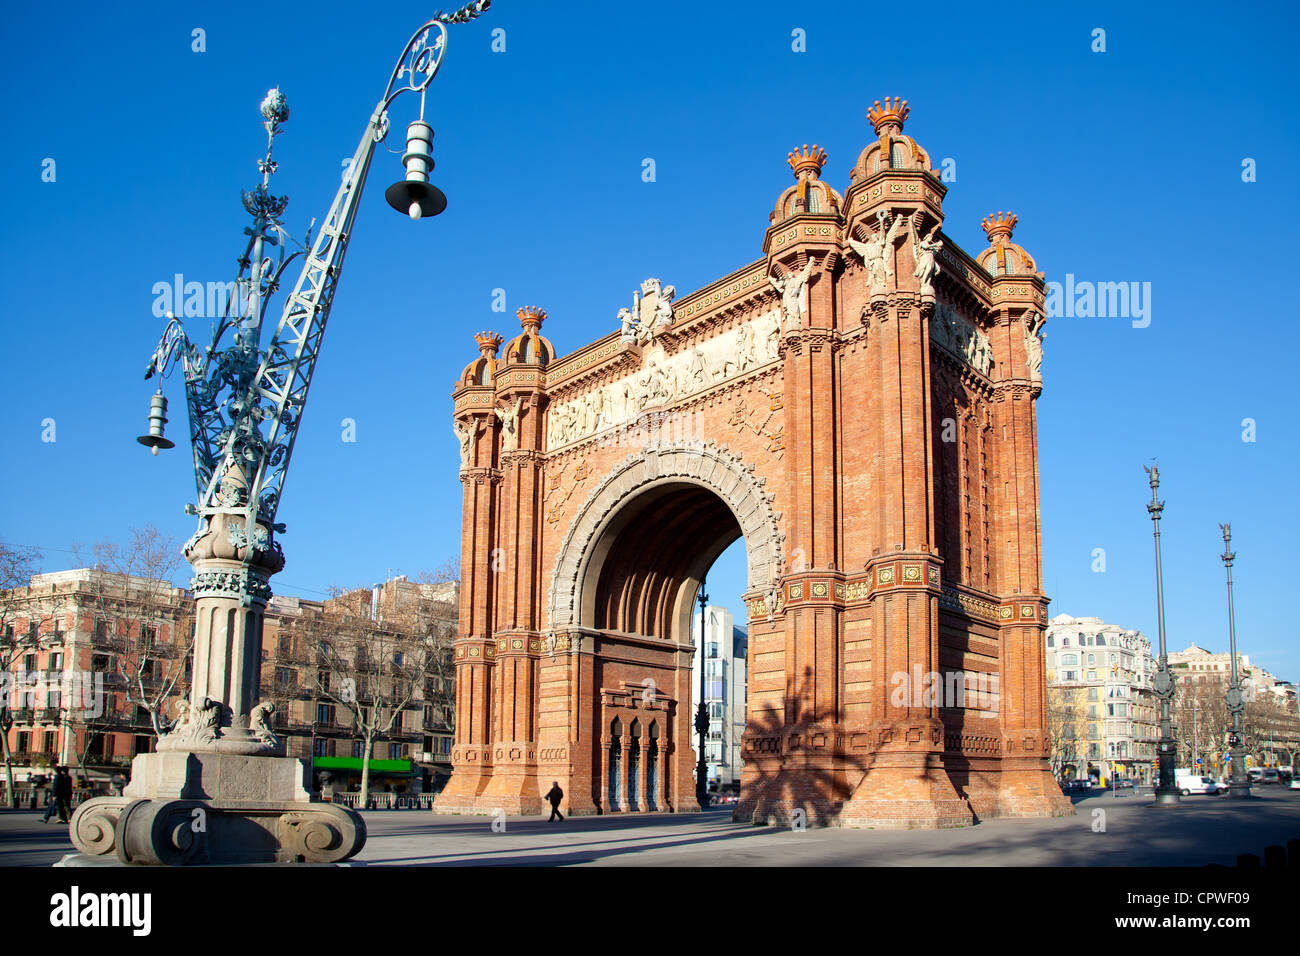 Arco del Triunfo Barcelona Triumph Arch Arc de Triomf Stock Photo